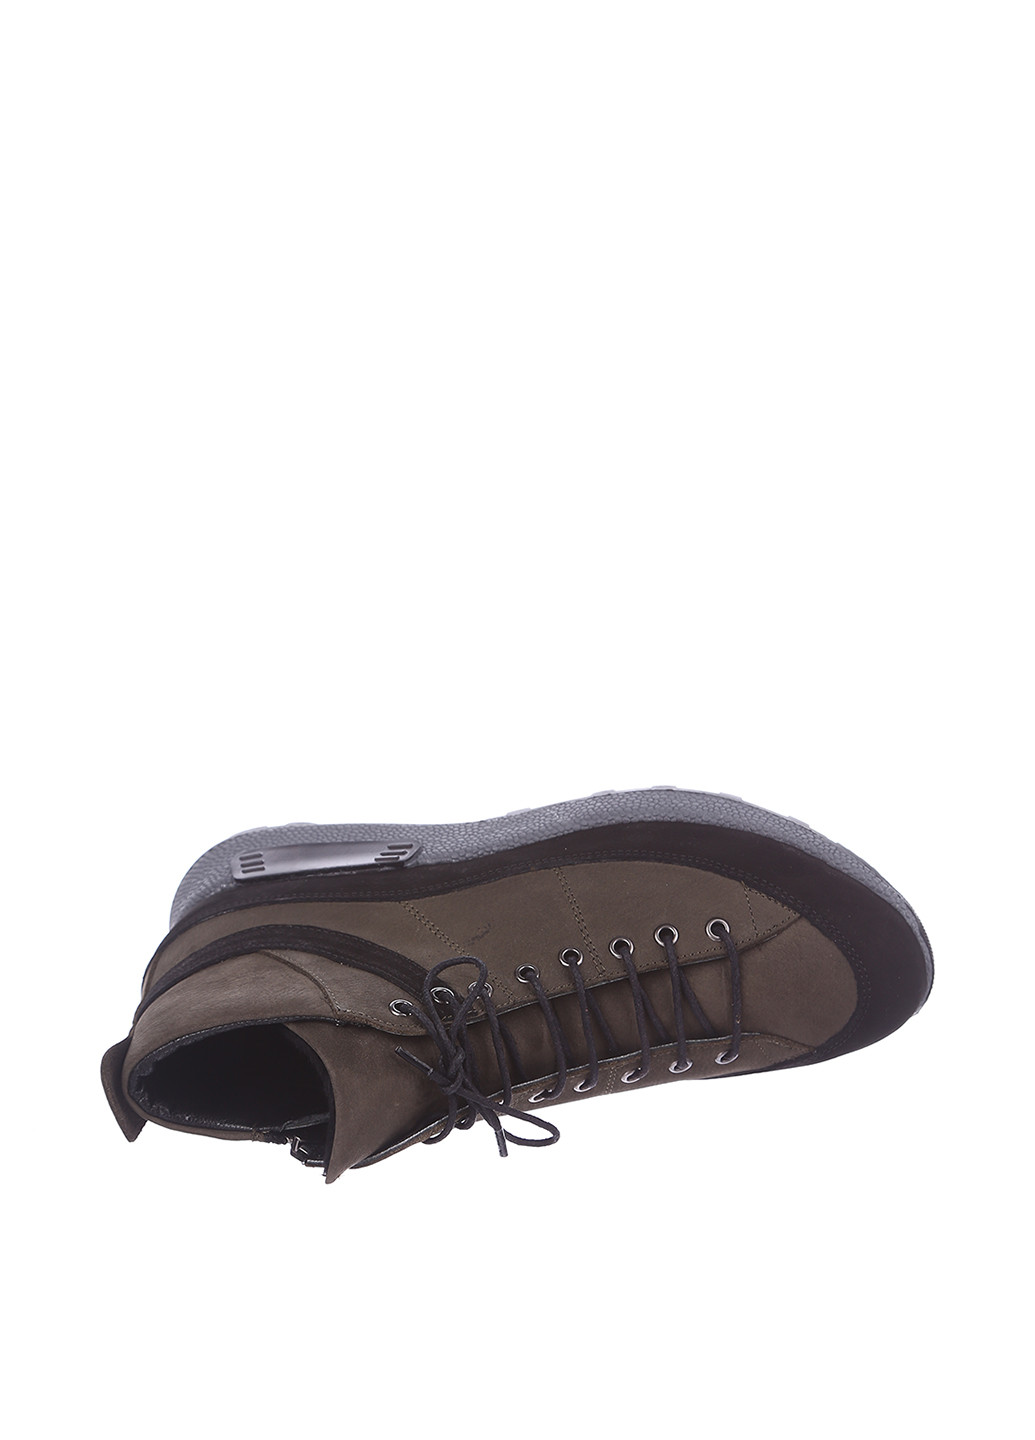 Осенние ботинки Pera Donna со шнуровкой из натурального нубука